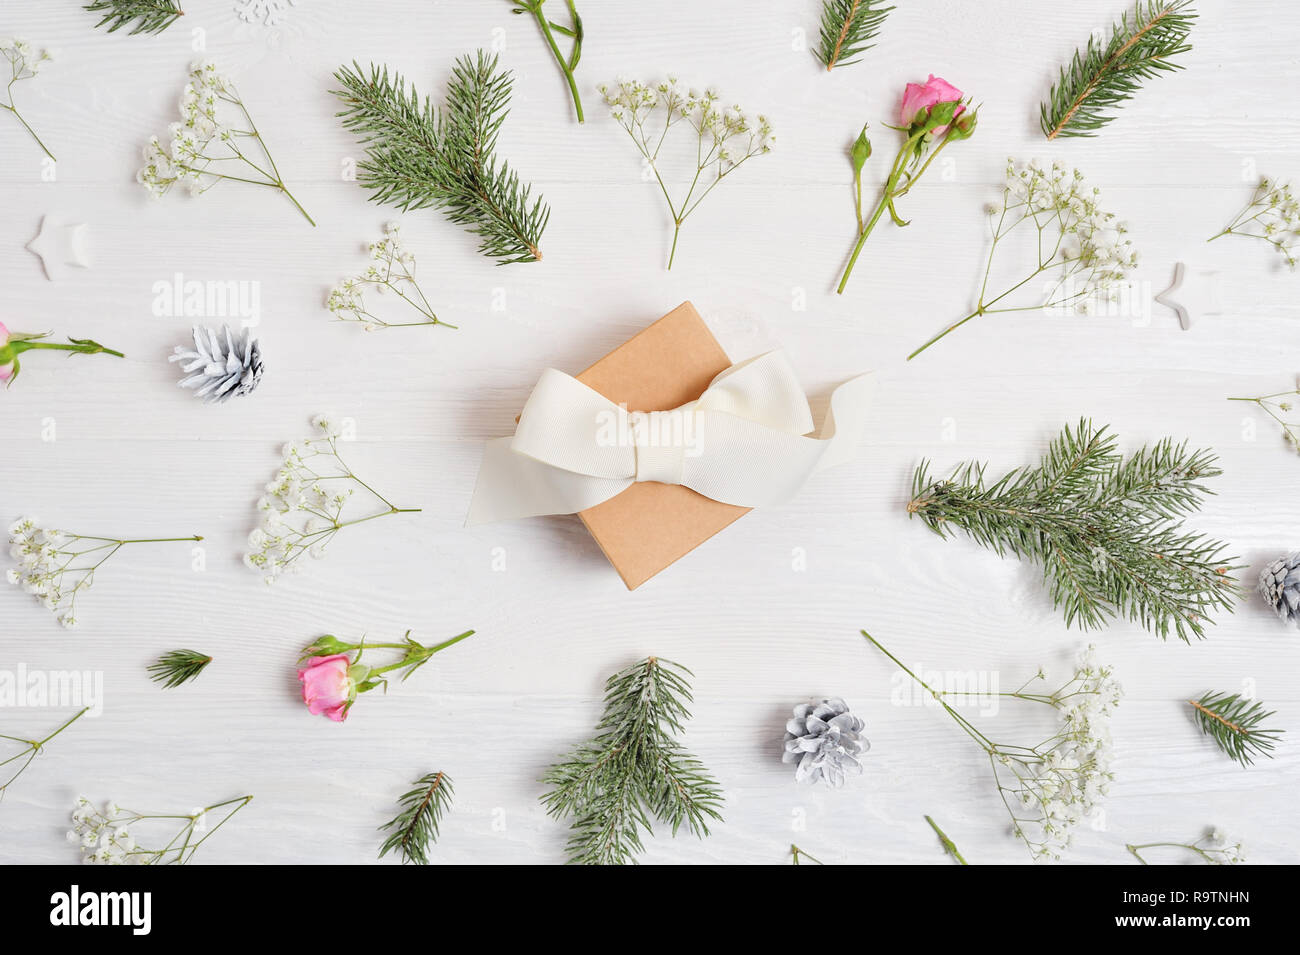 Abstract sfondo di Natale decorato con regalo in centro e xmas elementi - coni, rami di alberi, rose su un bianco sullo sfondo di legno Foto Stock